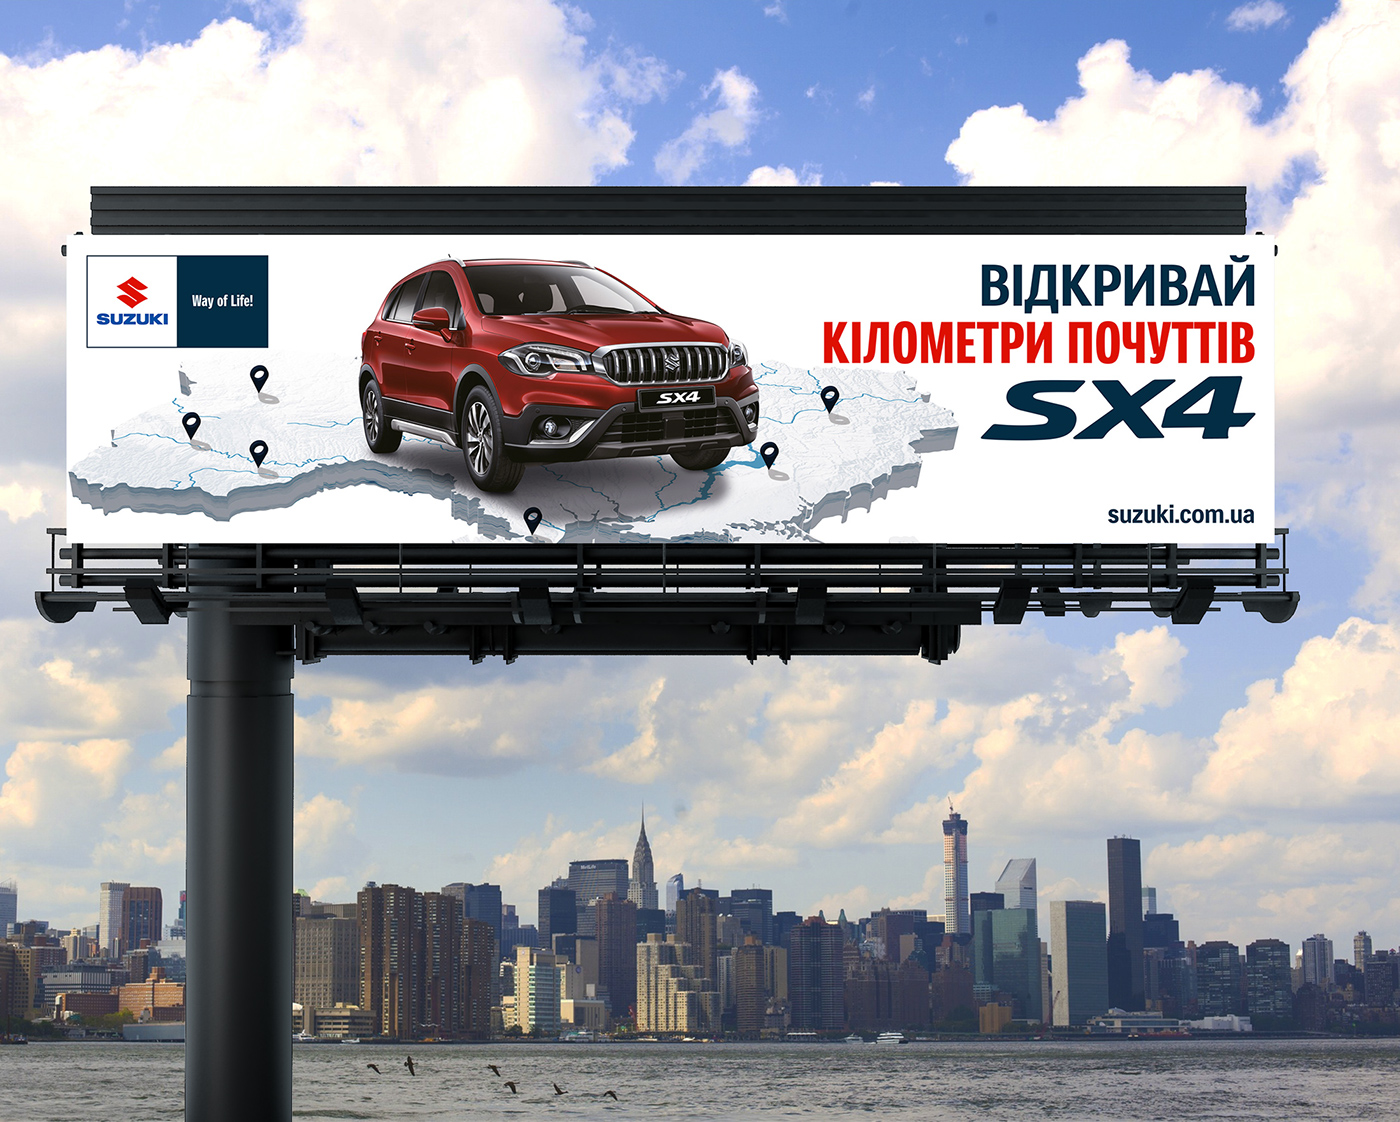 car Suzuki vitara sx4 Advertising  billboard ukraine design marketing  